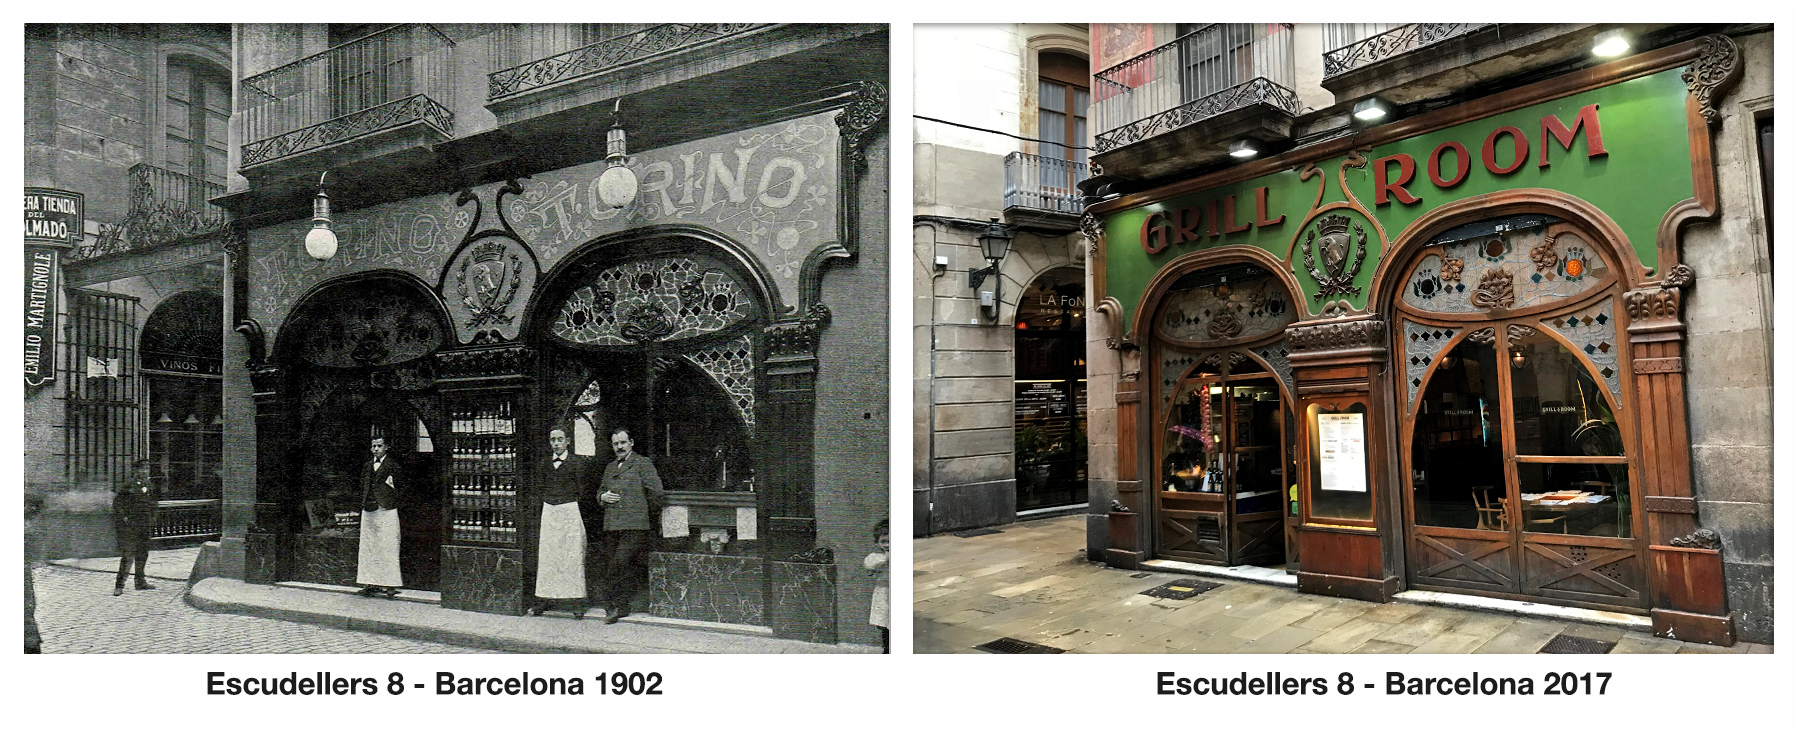 Escudellers 8 - Barcelona 1902